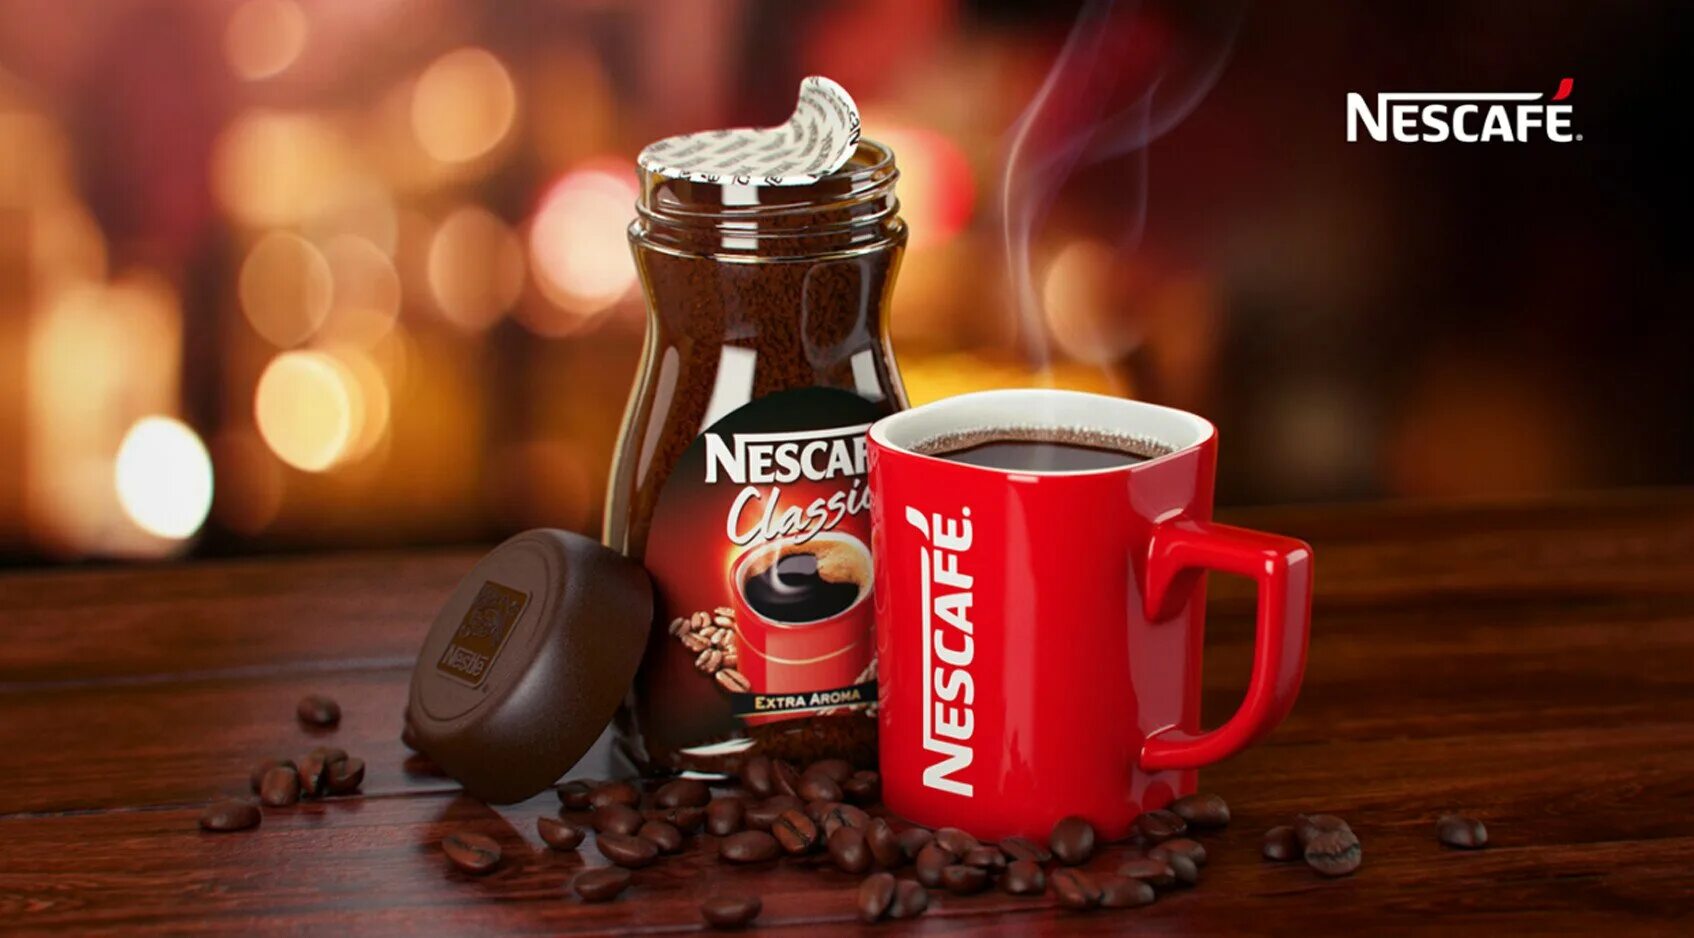 Рекламирует кофе. Nescafe Classic 2g. Кружка Нестле Нескафе Классик. Реклама кофе. Кофе Нескафе Кружка.